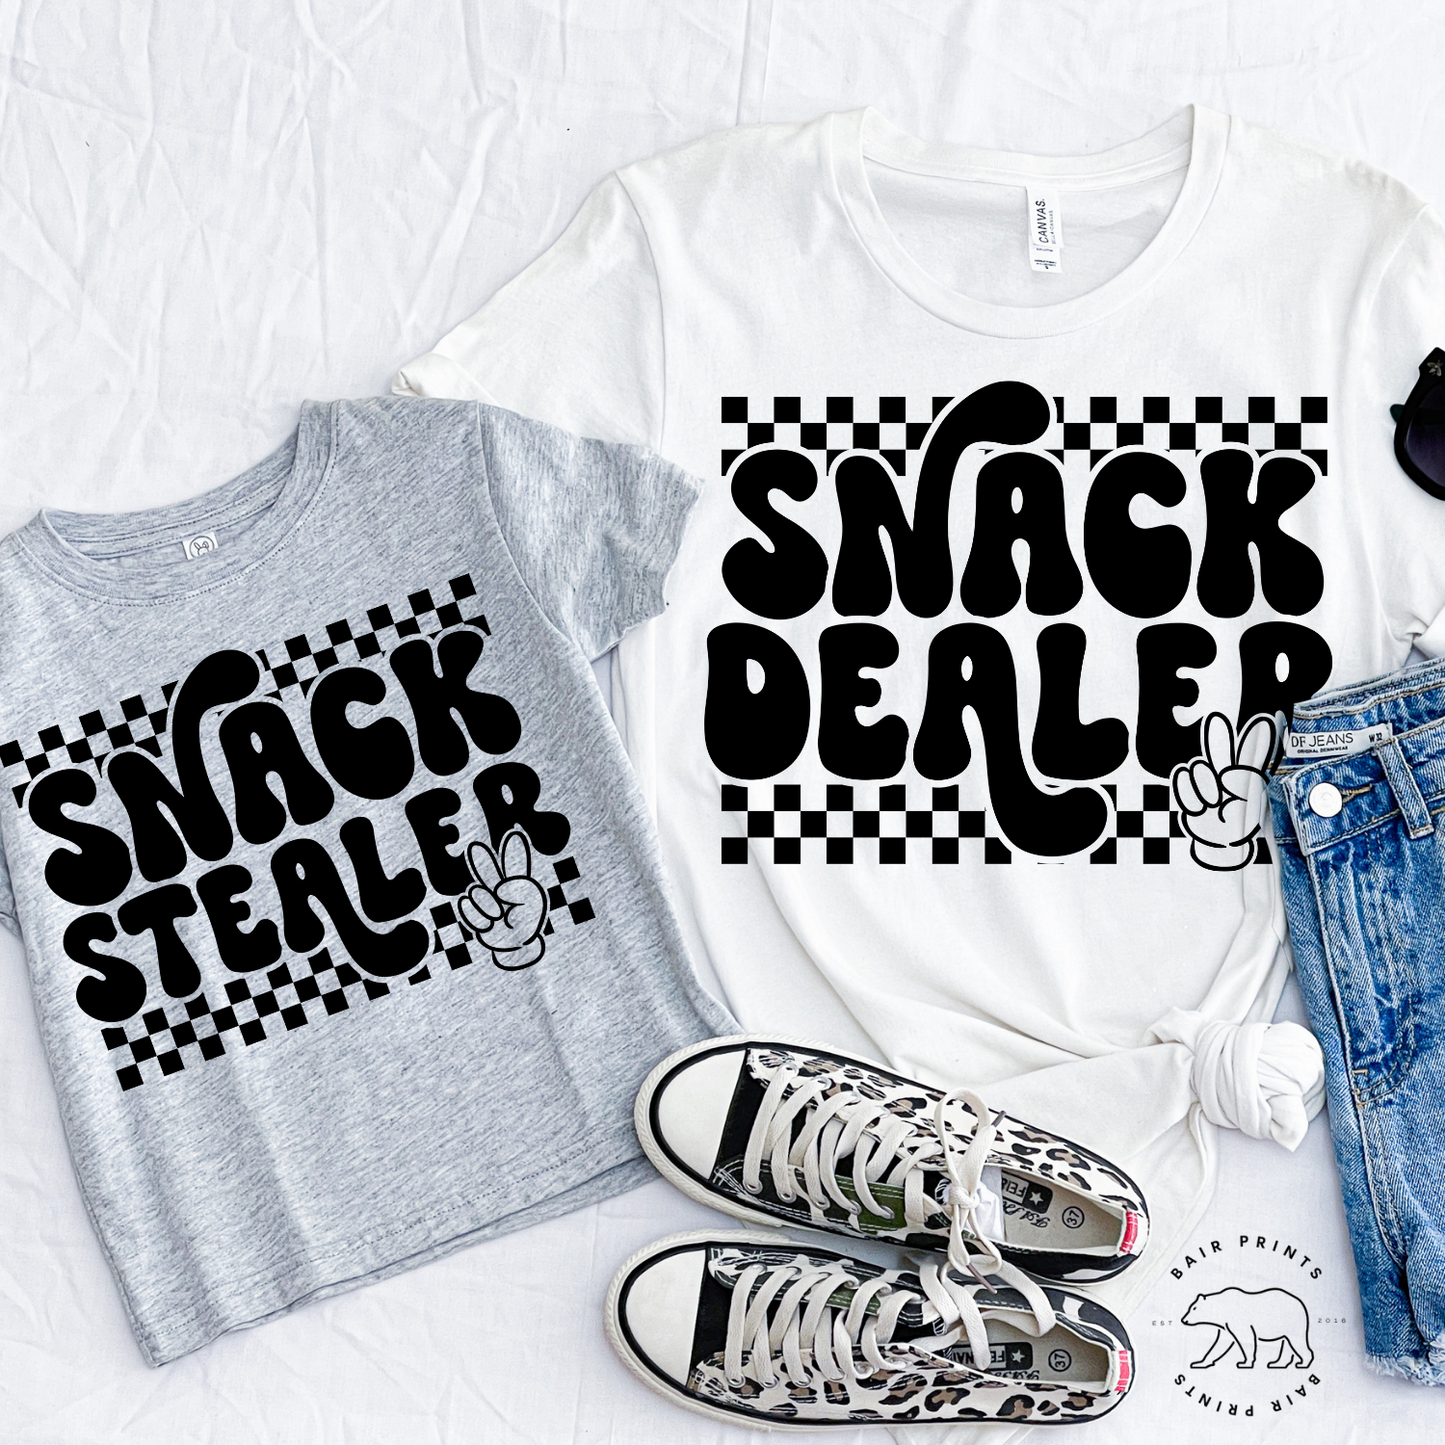 Snack Dealer OR Snack Stealer T-shirt